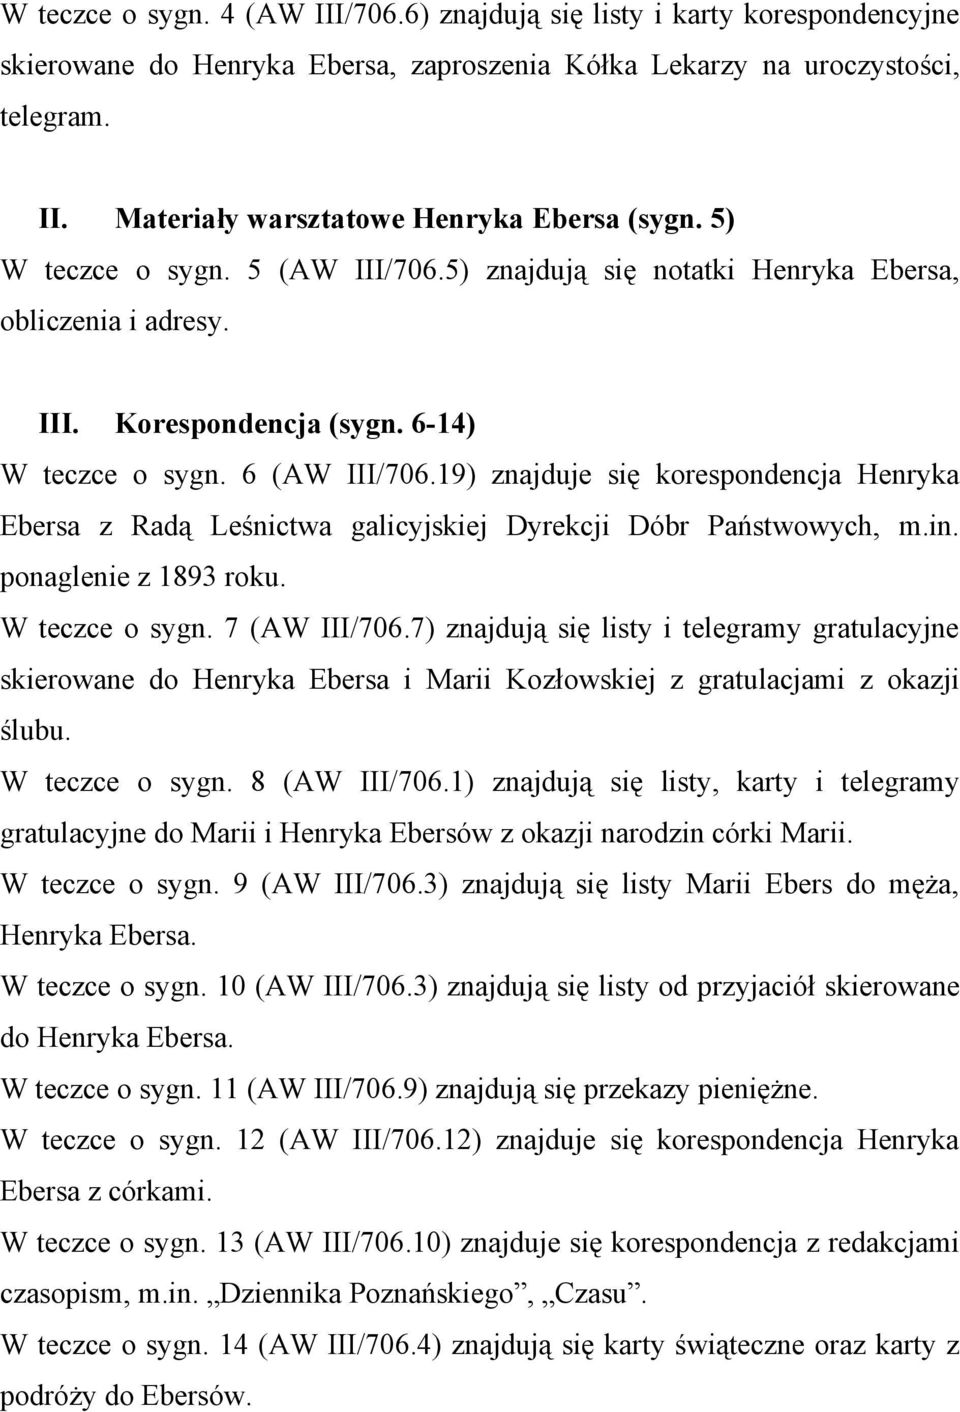 19) znajduje się korespondencja Henryka Ebersa z Radą Leśnictwa galicyjskiej Dyrekcji Dóbr Państwowych, m.in. ponaglenie z 1893 roku. W teczce o sygn. 7 (AW III/706.